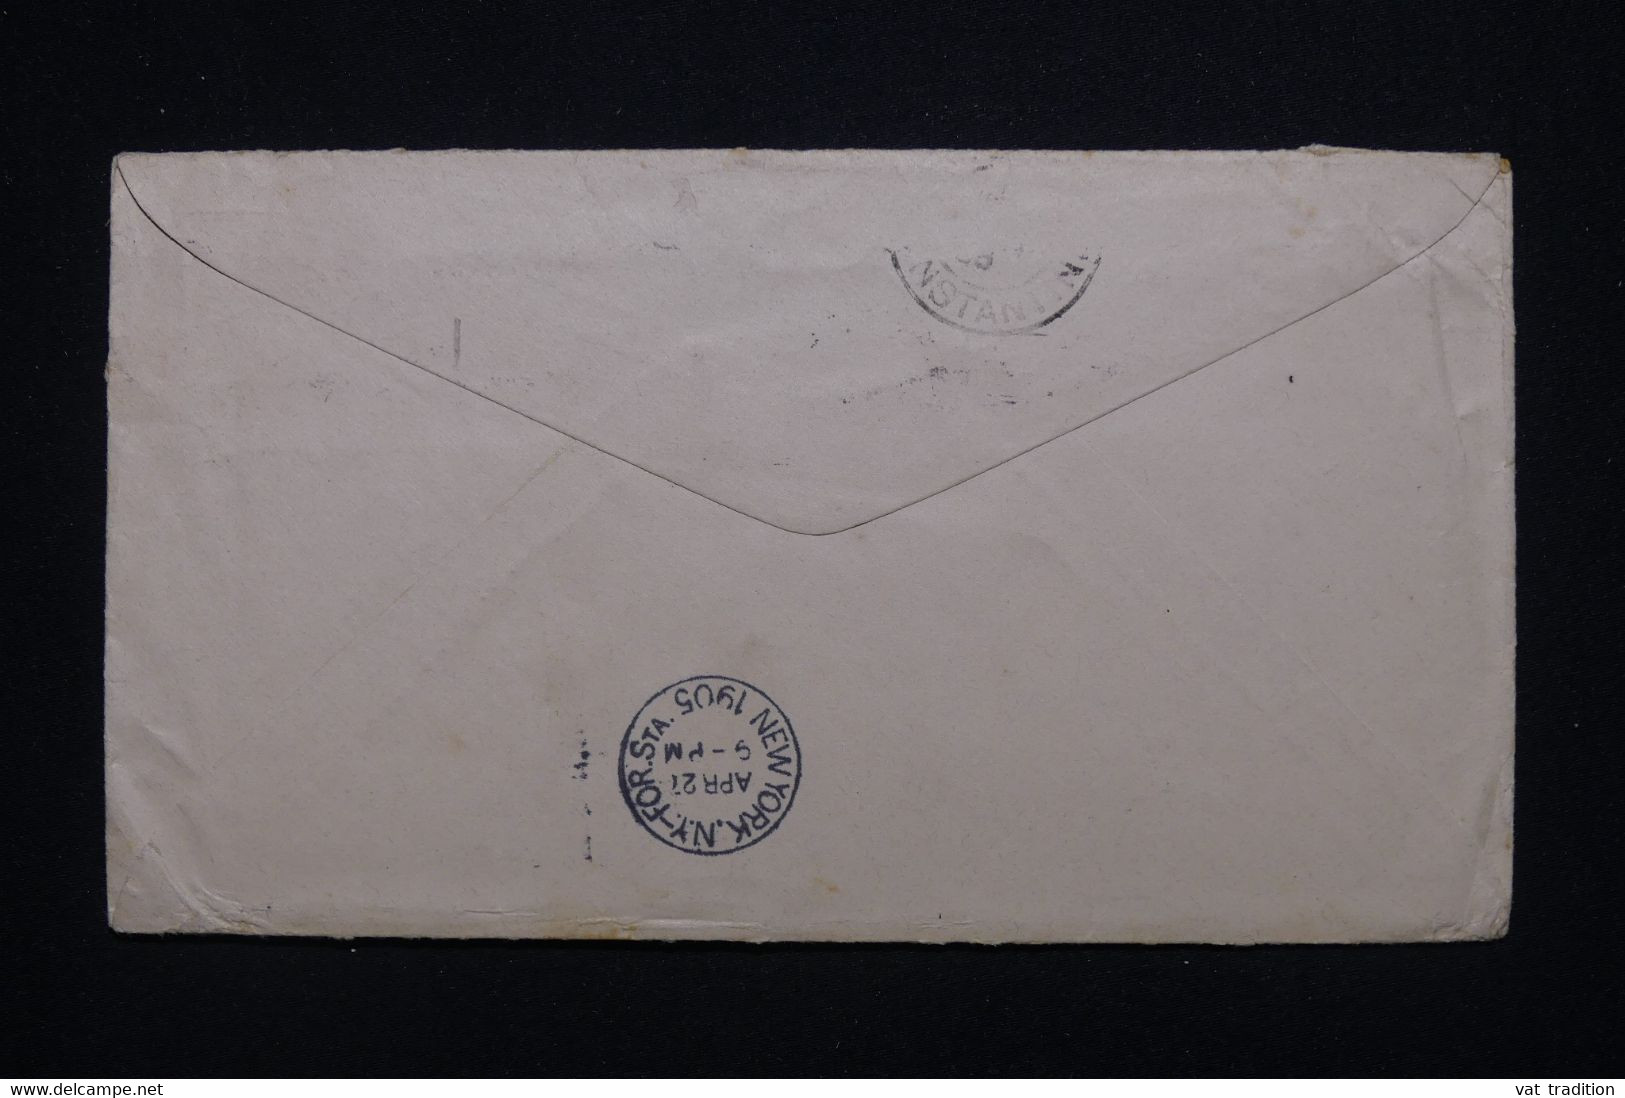 ETATS UNIS - Entier Postal Commercial De San Francisco Pour L 'Algérie En 1905 , Complément Disparu - L 98073 - 1901-20